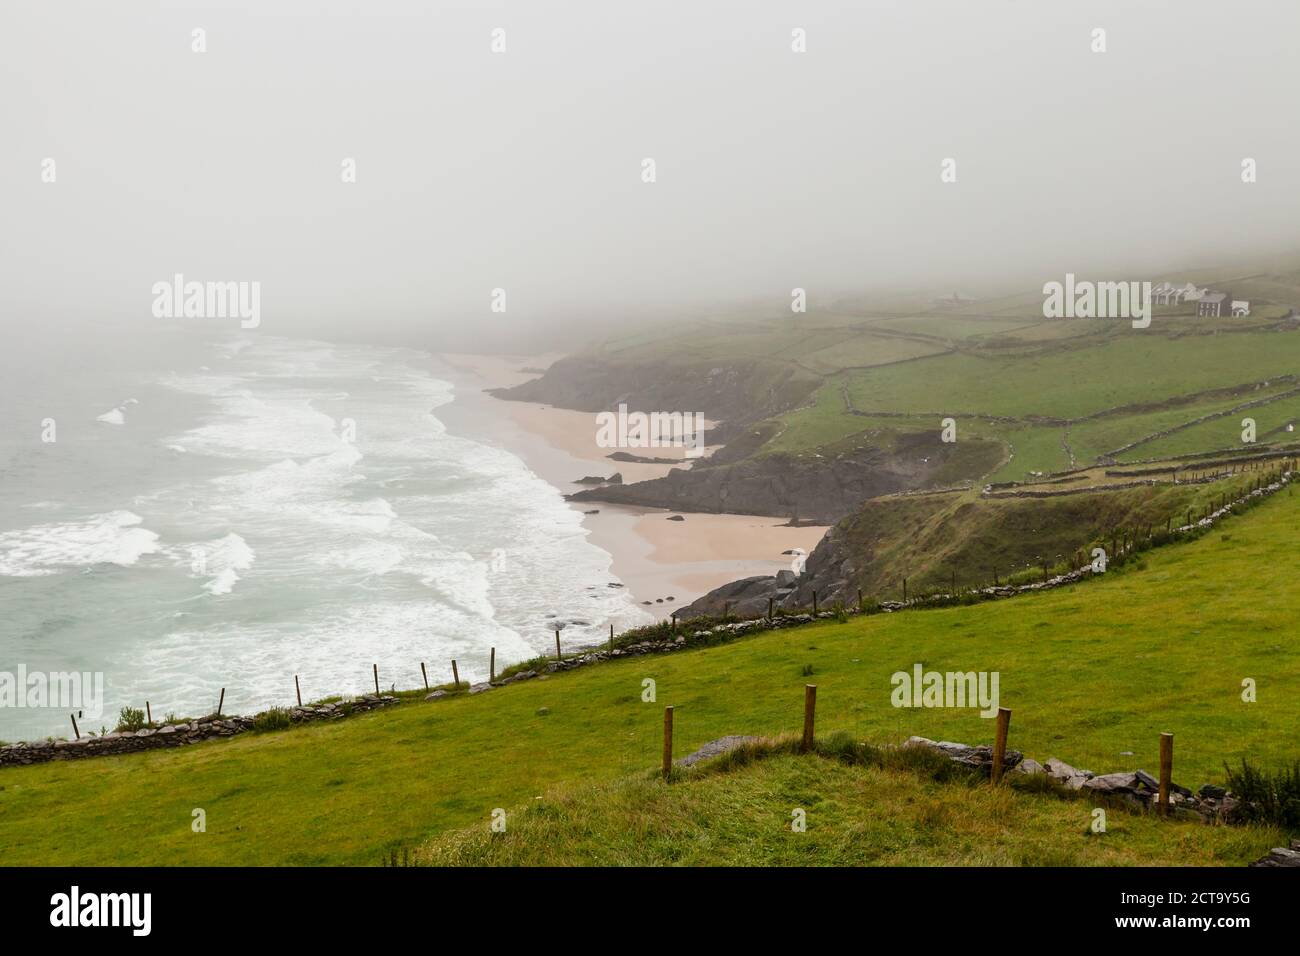 Ireland, County Kerry, view of foggy bay of Dingle Peninsula Stock Photo